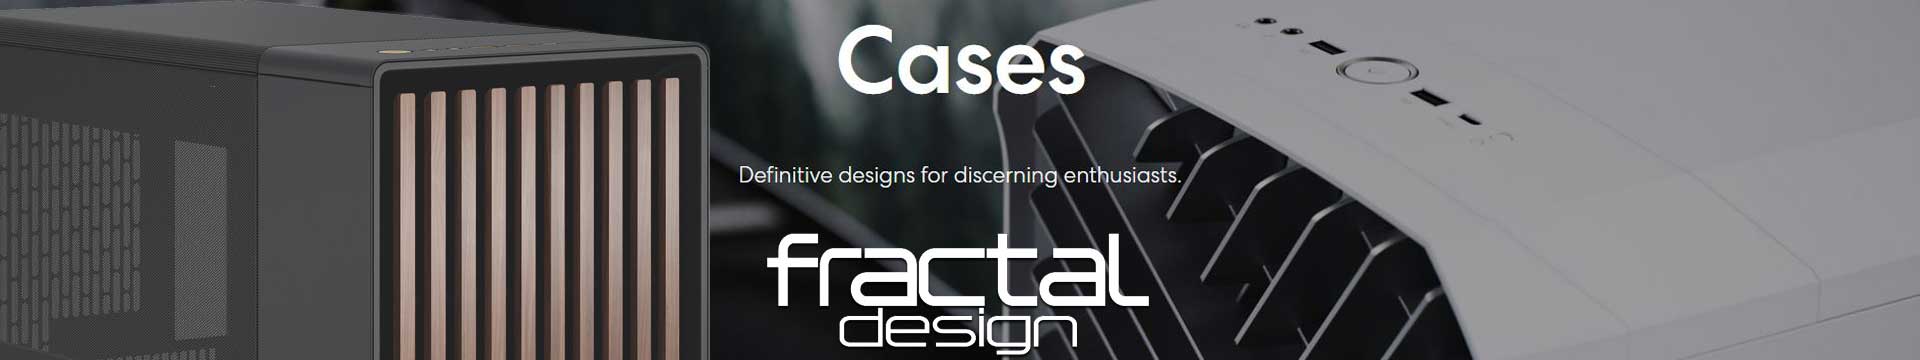 FRACTAL DESIGN, FRACTAL CASE, FRACTAL CASES